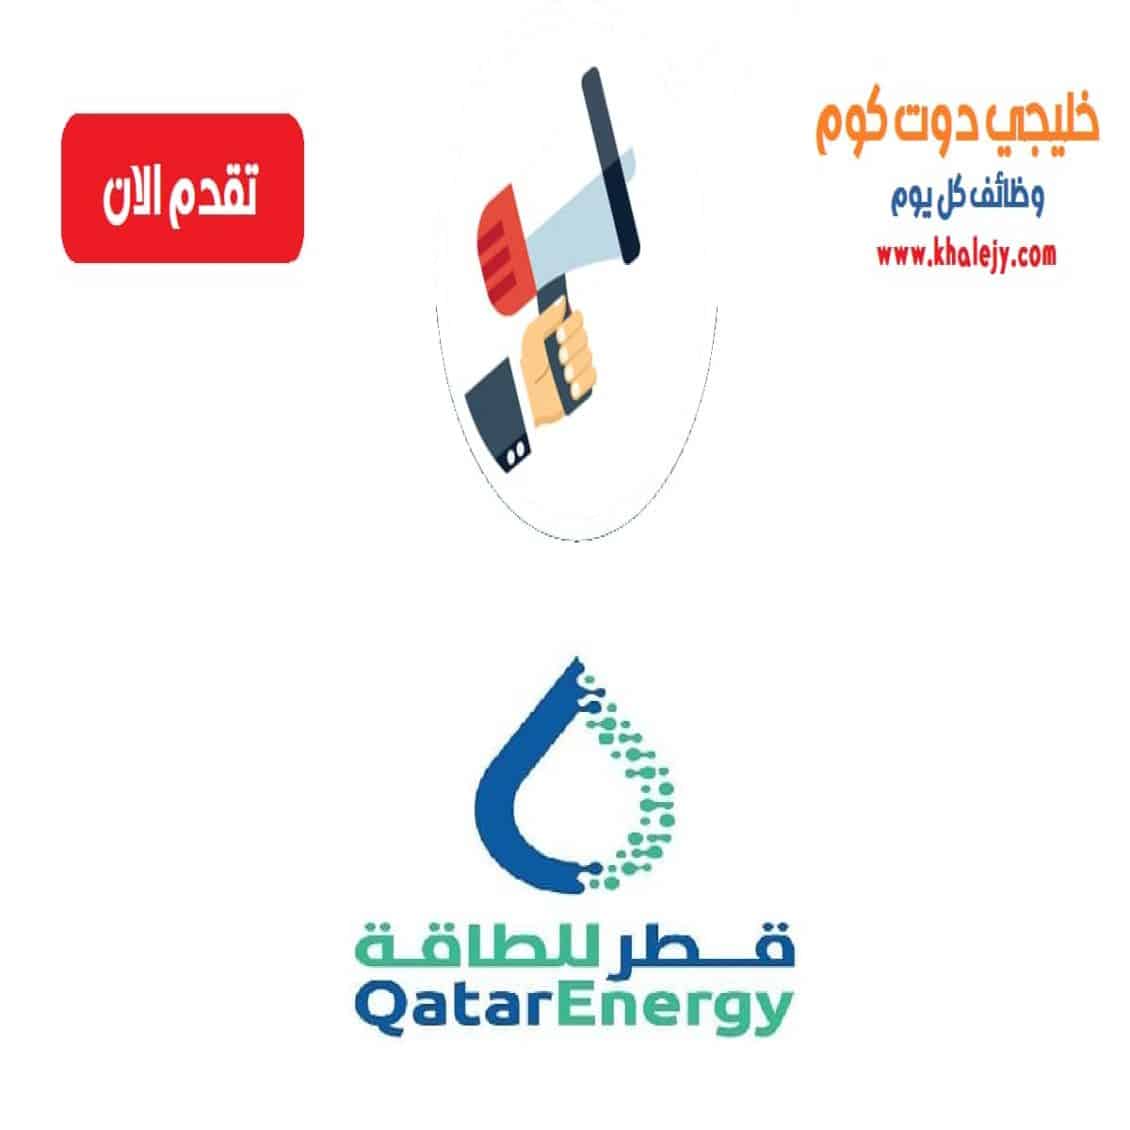 وظائف قطر للطاقة في قطر للمواطنين والاجانب